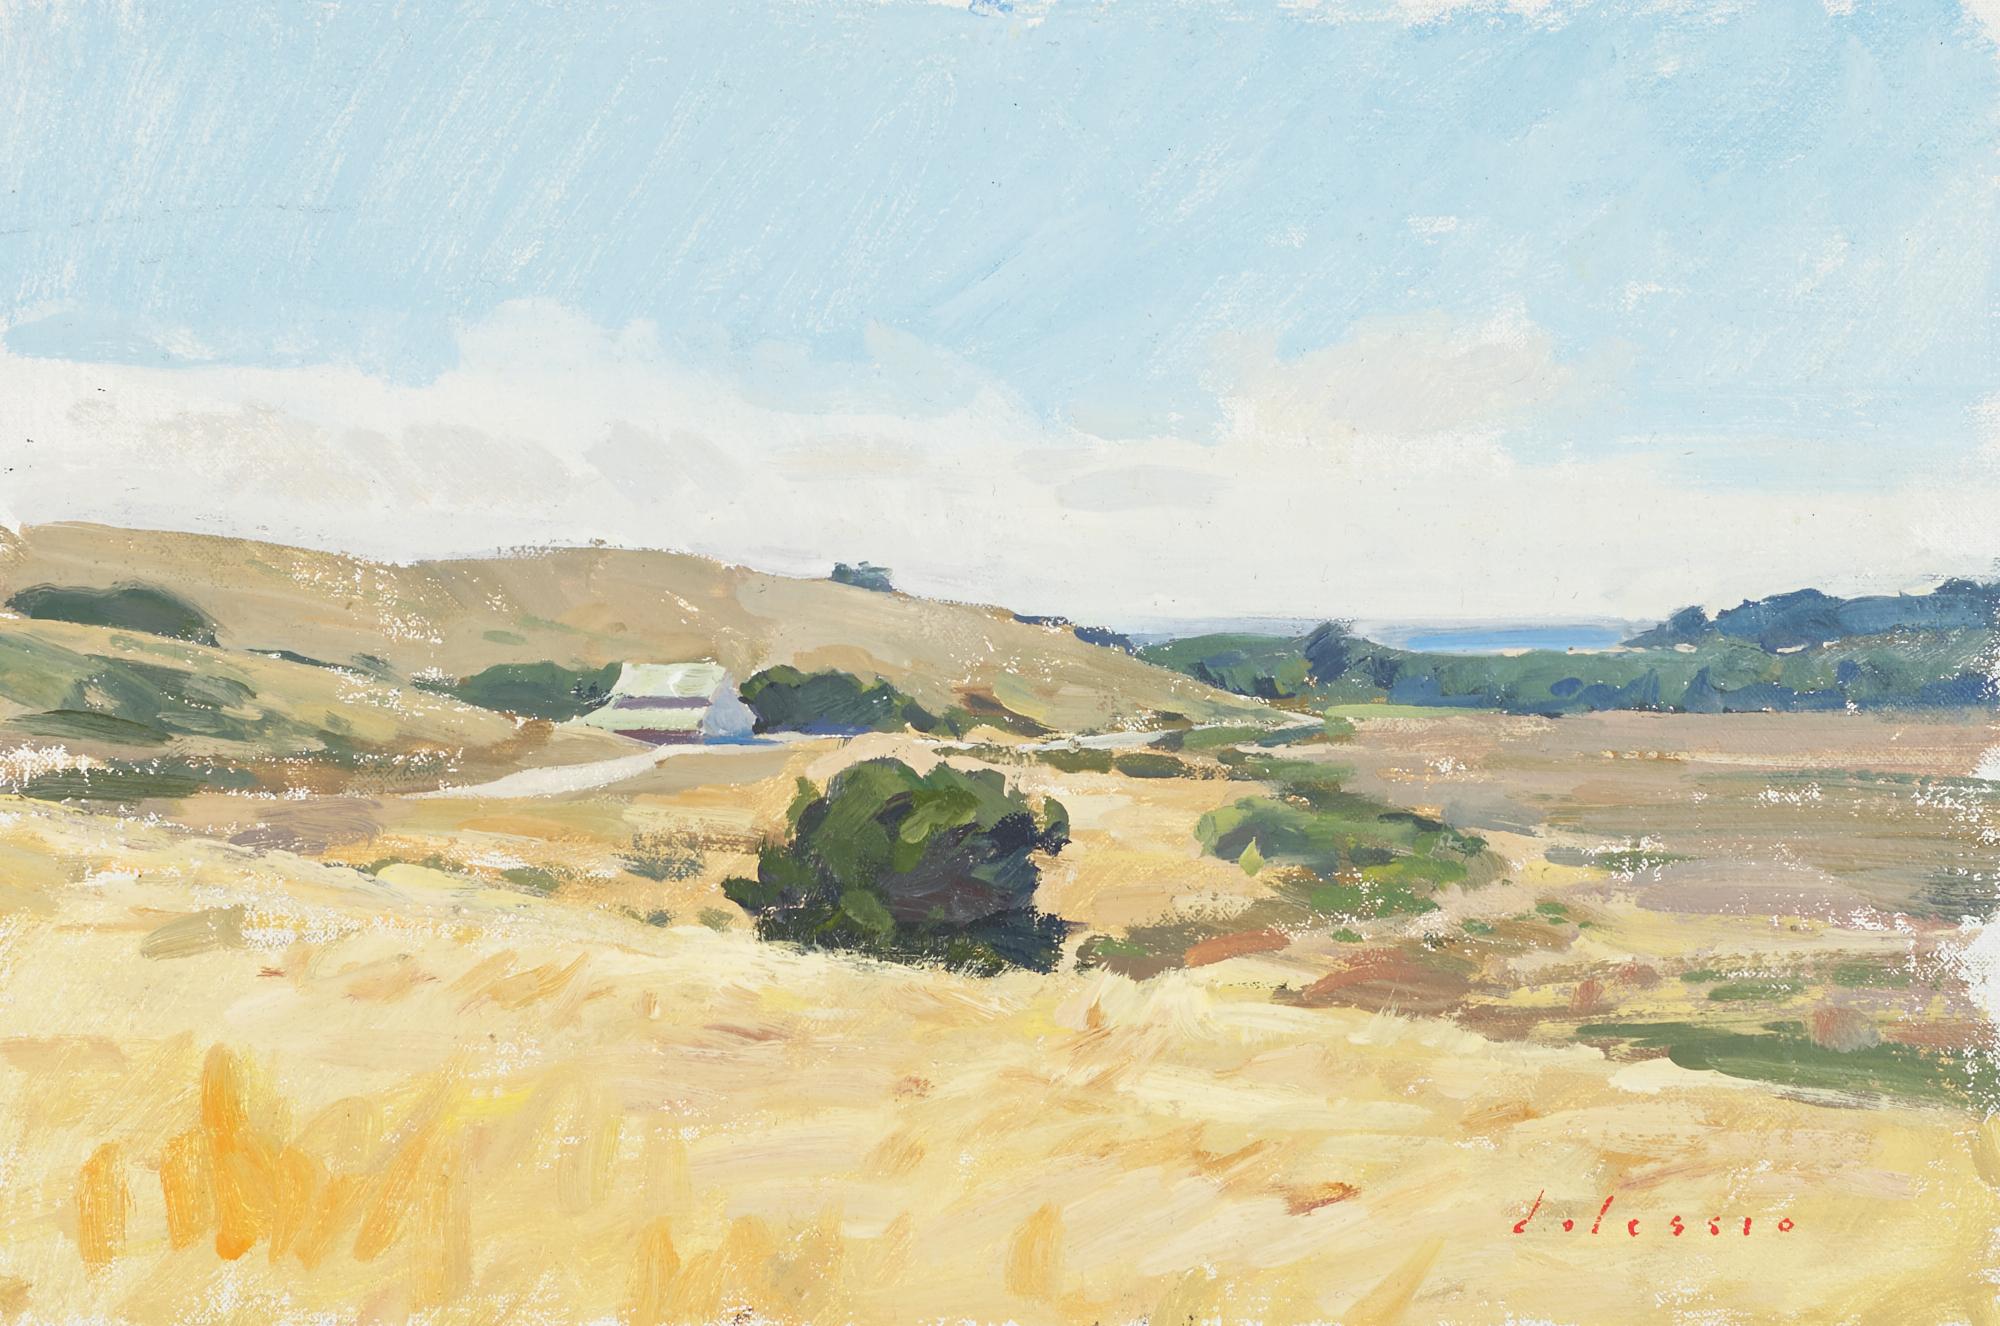 Landscape Painting Marc Dalessio - "Palo Corona, Carmel Valley" Peinture réaliste contemporaine en plein air, Californie